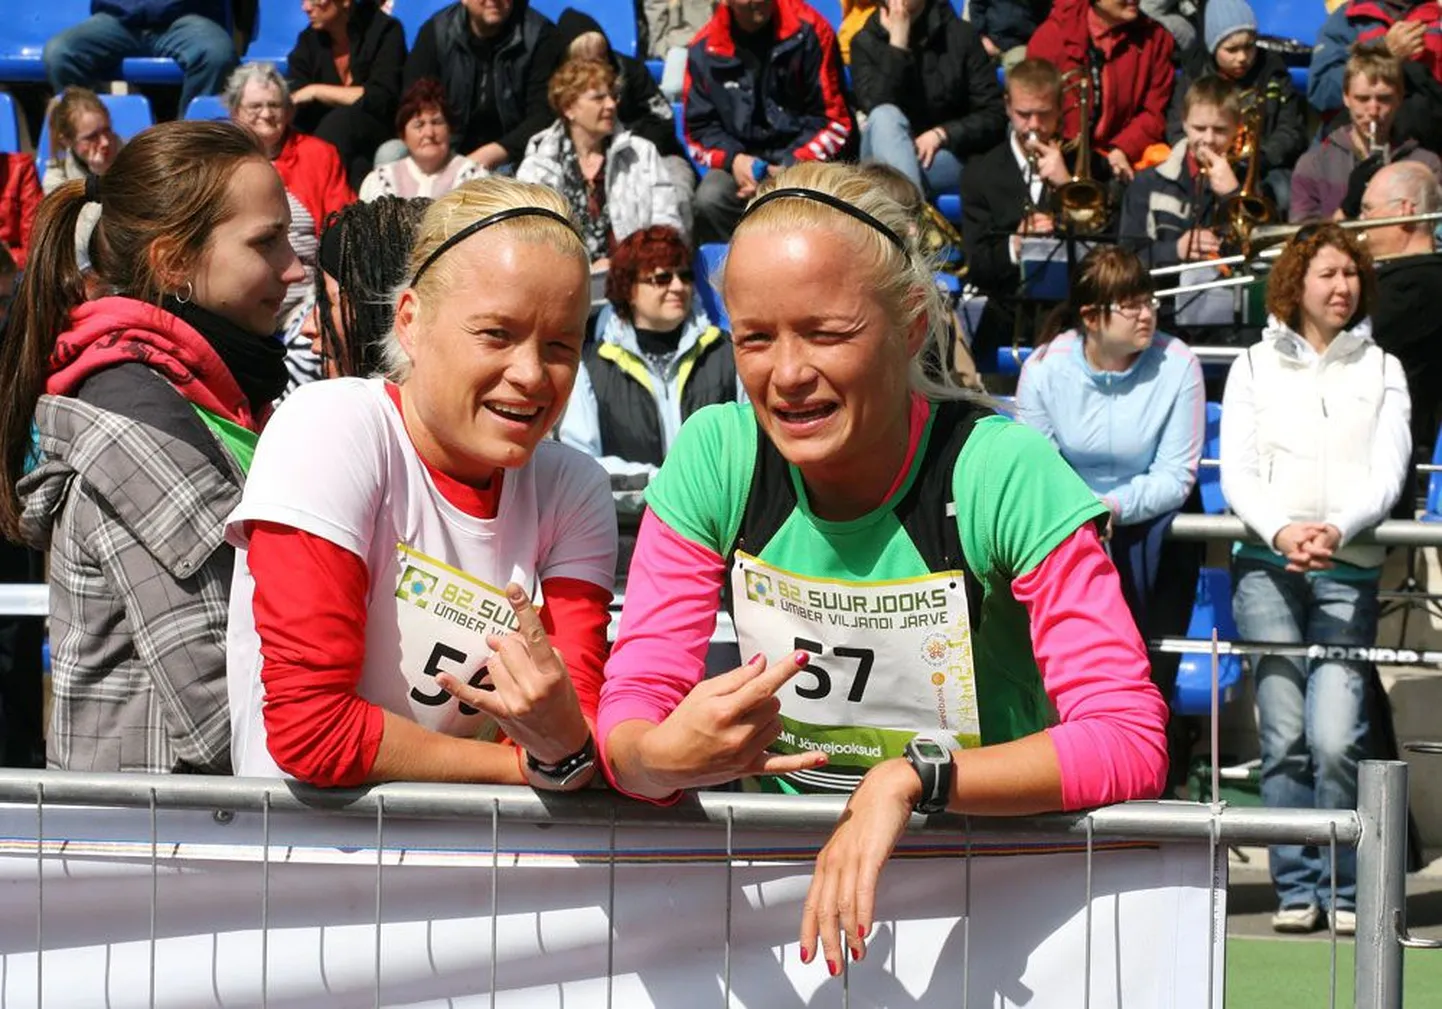 Сестры-близнецы Лейла и Лийна Луйк выполнили в марафонском беге нормативы, позволяющие им участвовать в титульных соревнованиях: Лейла норматив чемпионата мира и Лийна — норматив чемпионата Европы.